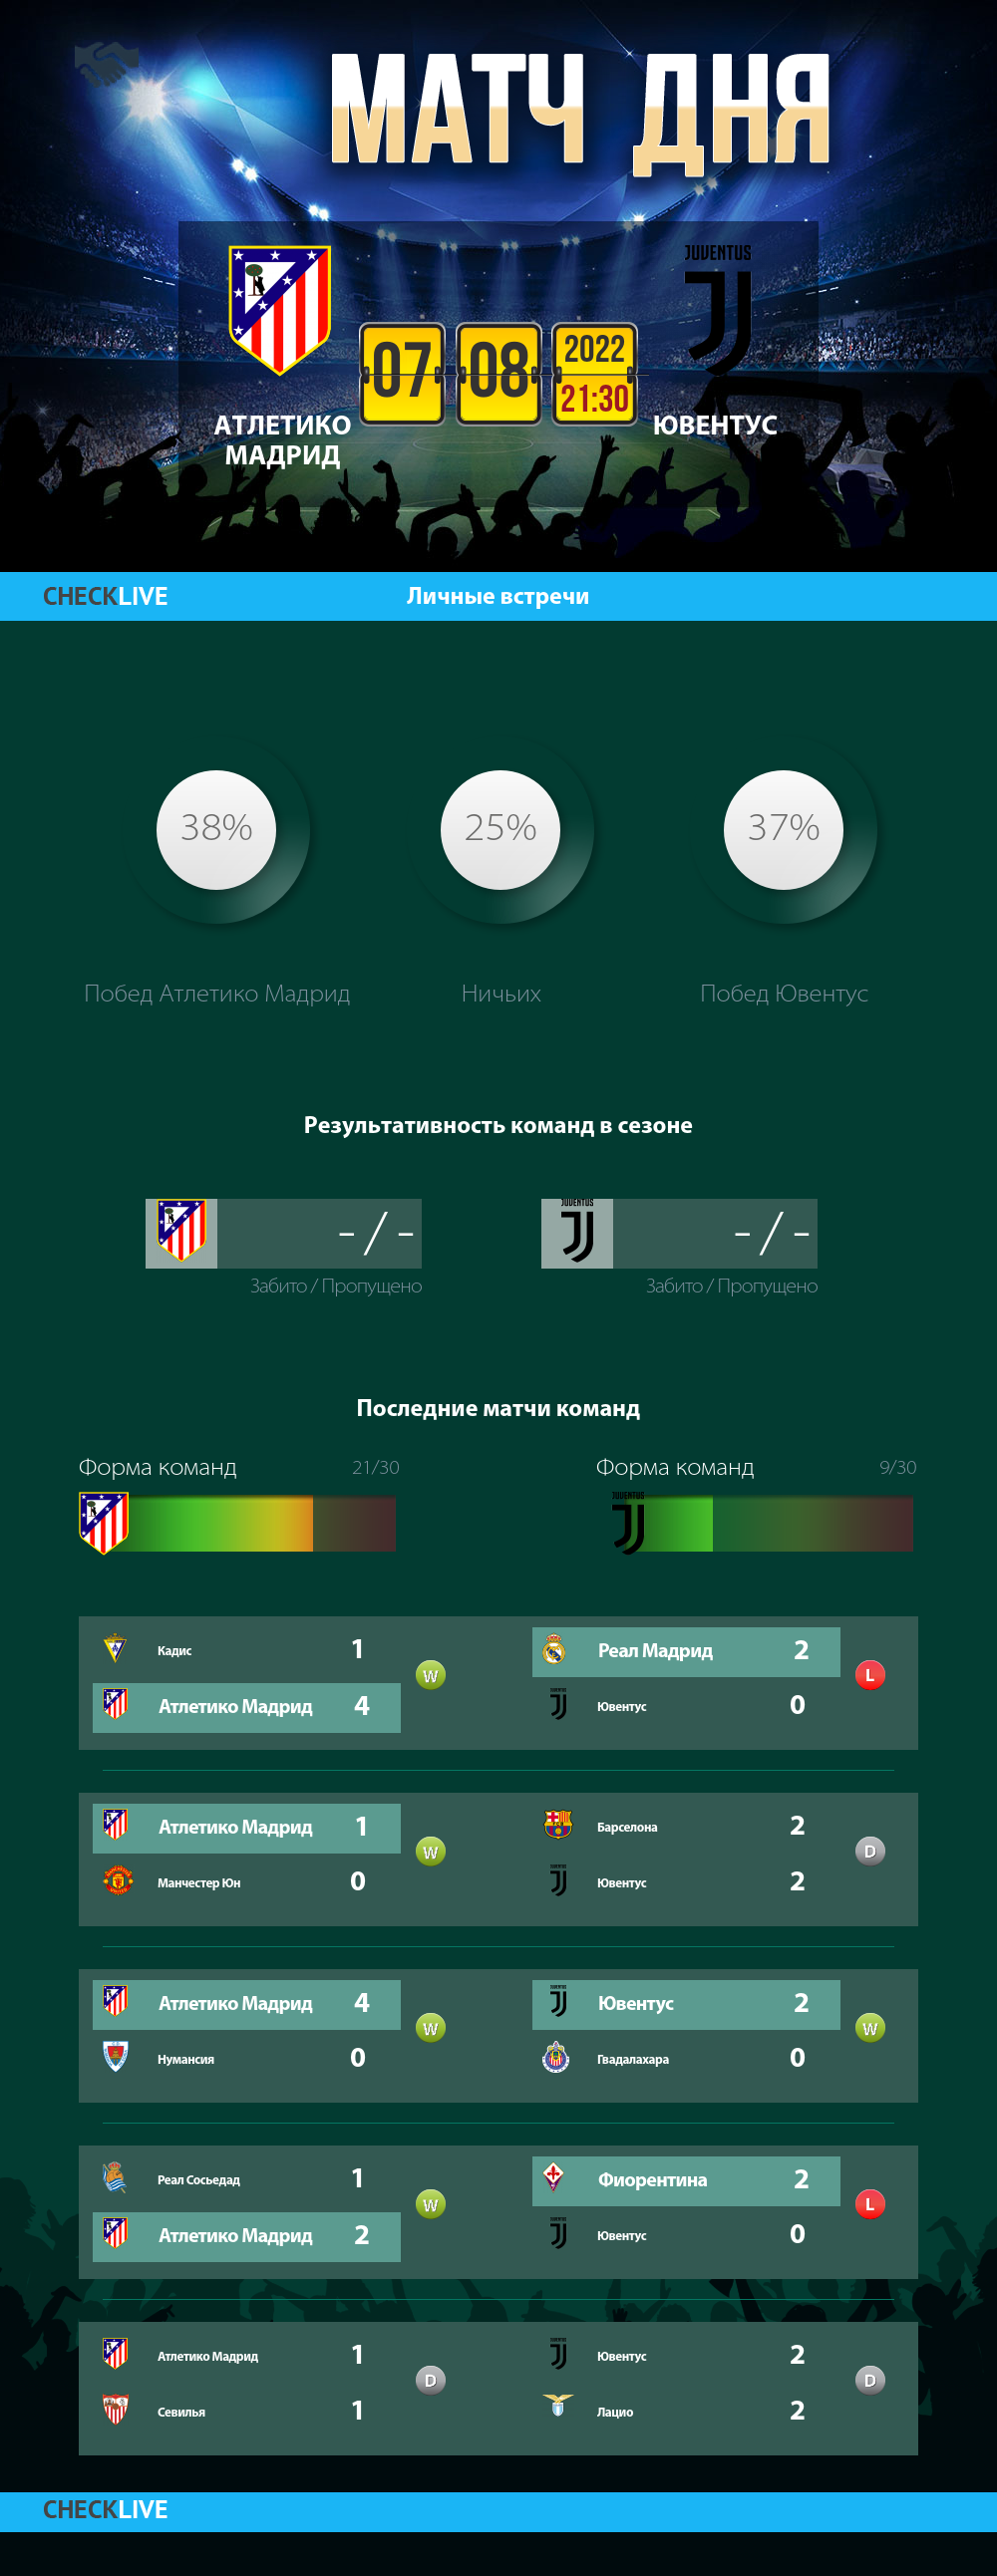 Инфографика Атлетико Мадрид и Ювентус матч дня 07.08.2022